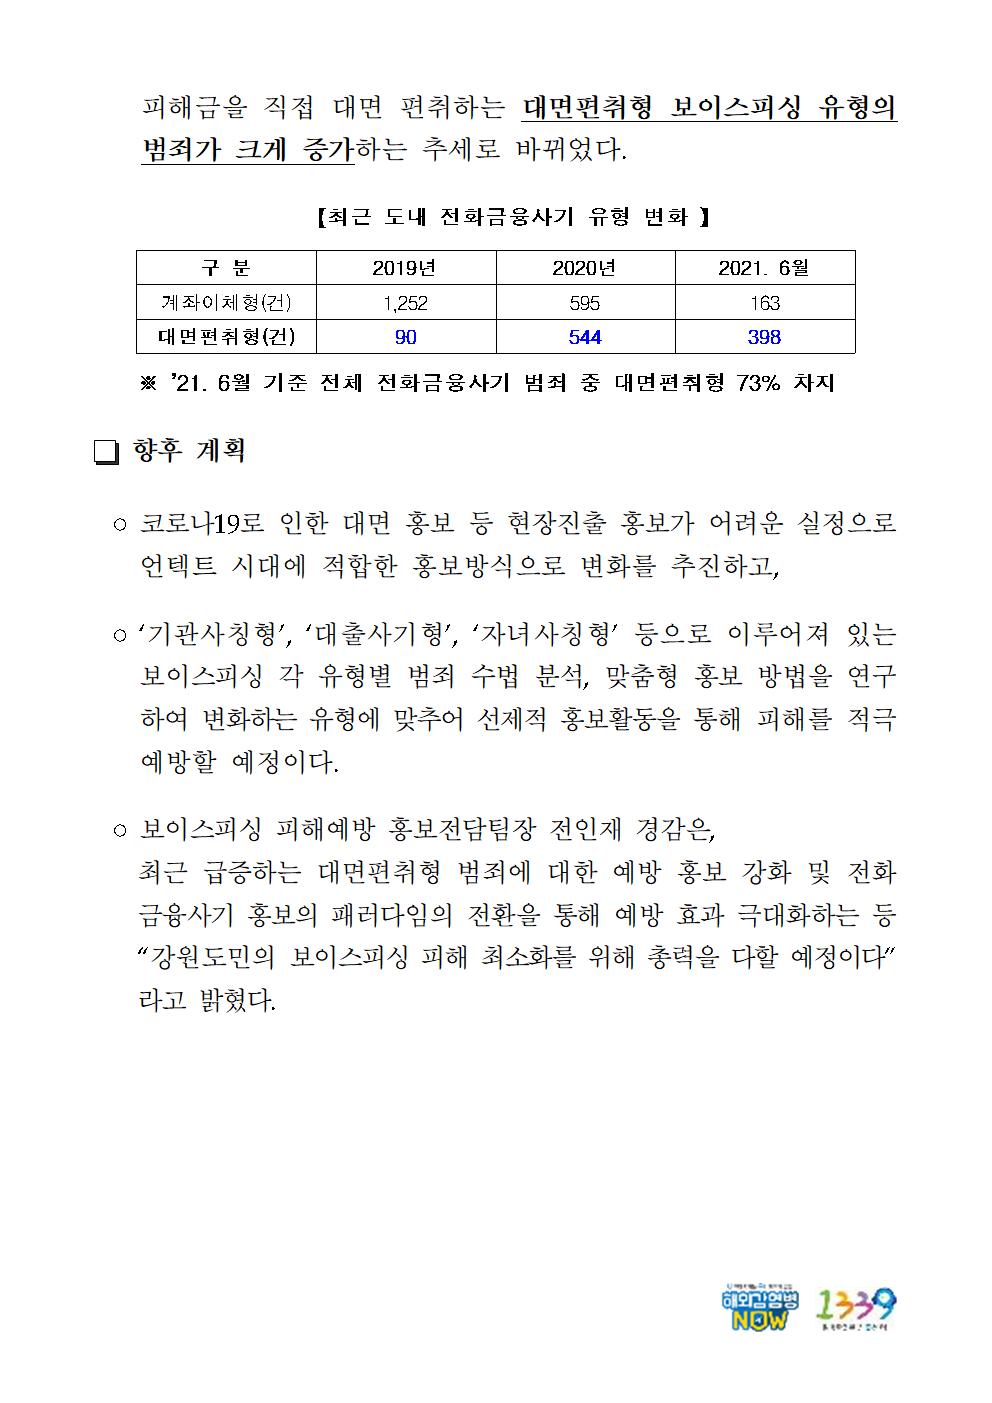 전화금융사기 피해예방 홍보전담팀-전화금융사기 피해예방 홍보전담팀002